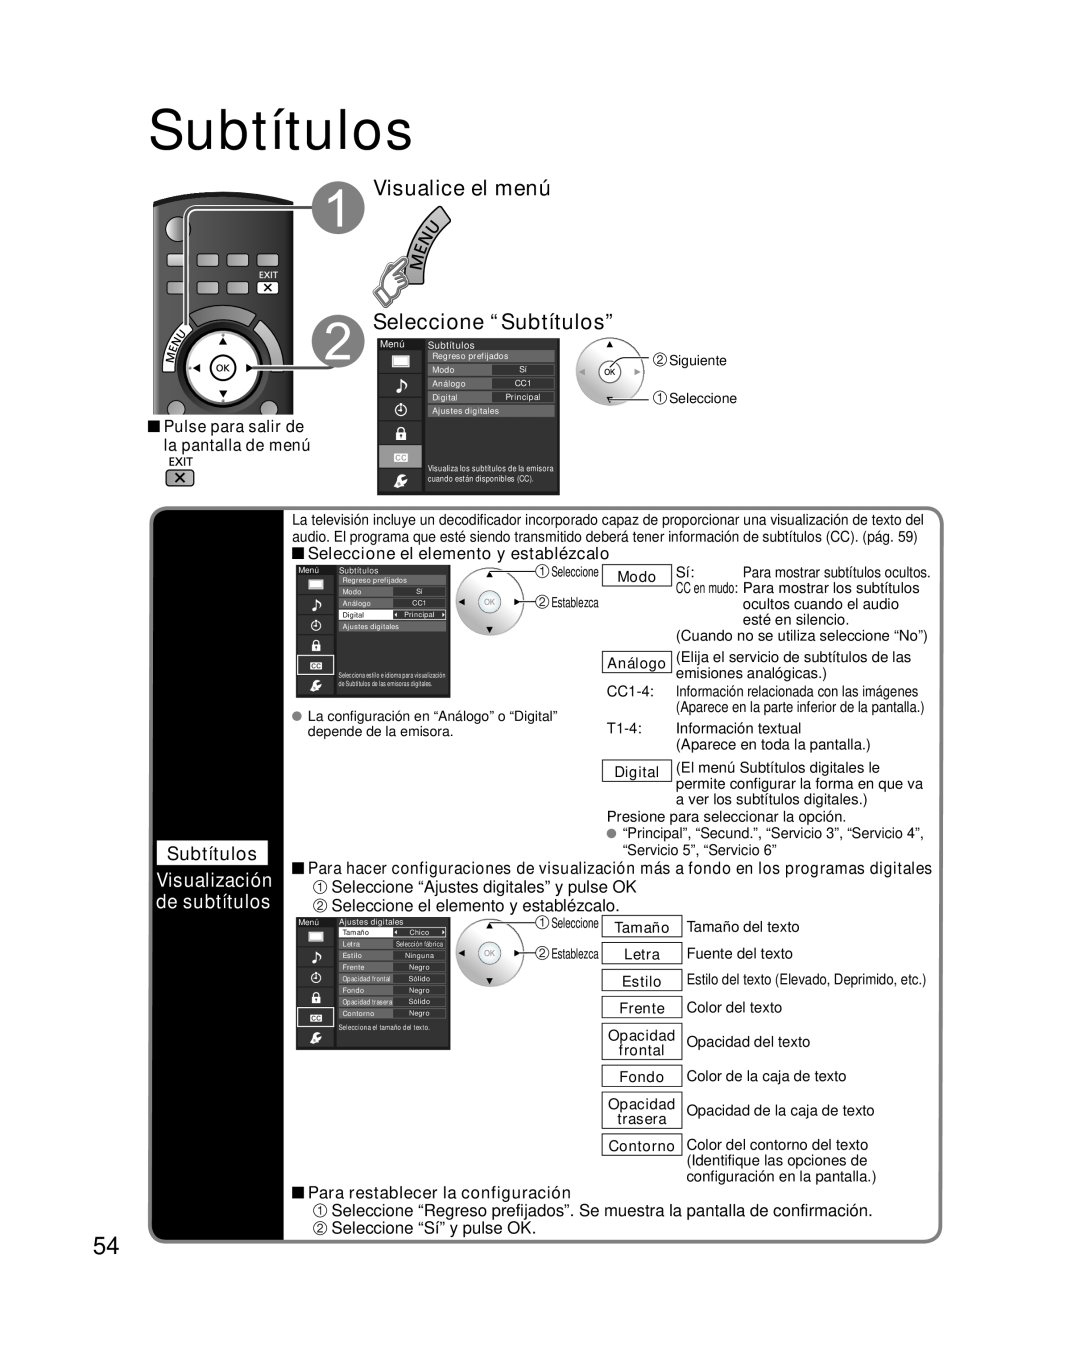 Panasonic TQB2AA0595 Visualice el menú Seleccione “Subtítulos”, Visualización de subtítulos, Modo, Digital, Contorno 